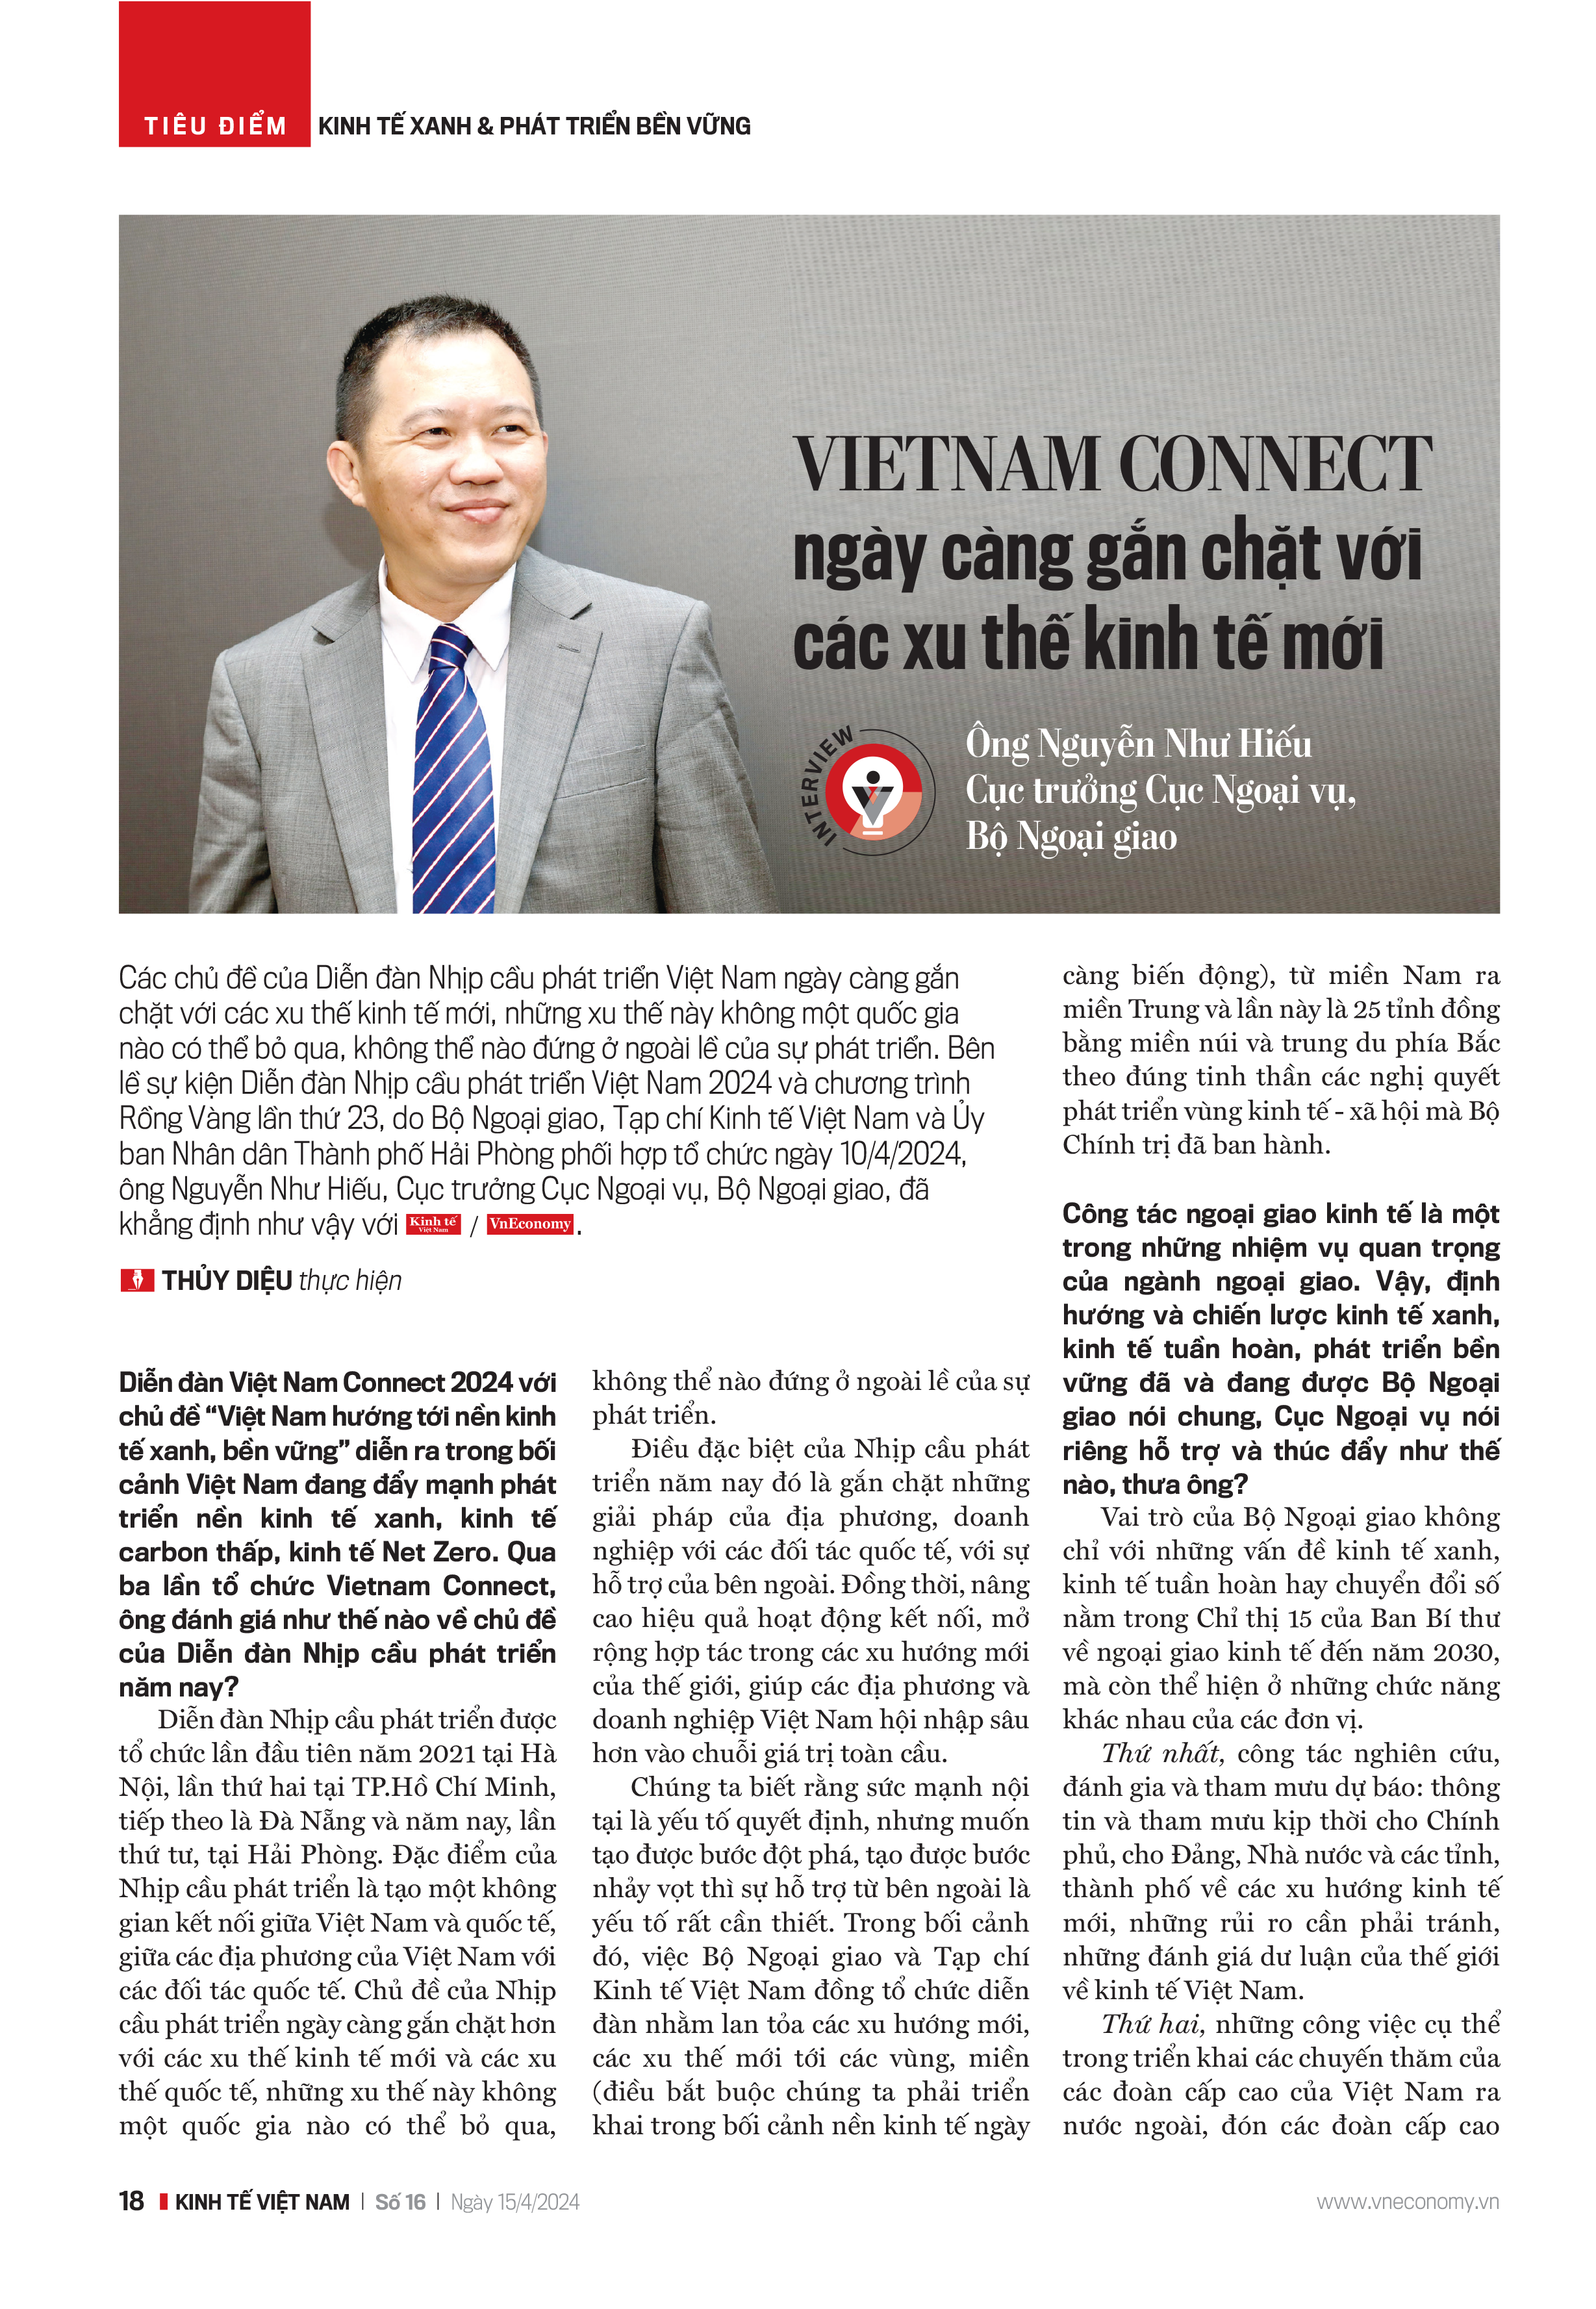 Vietnam Connect ngày càng gắn chặt với các xu thế kinh tế mới - Ảnh 7